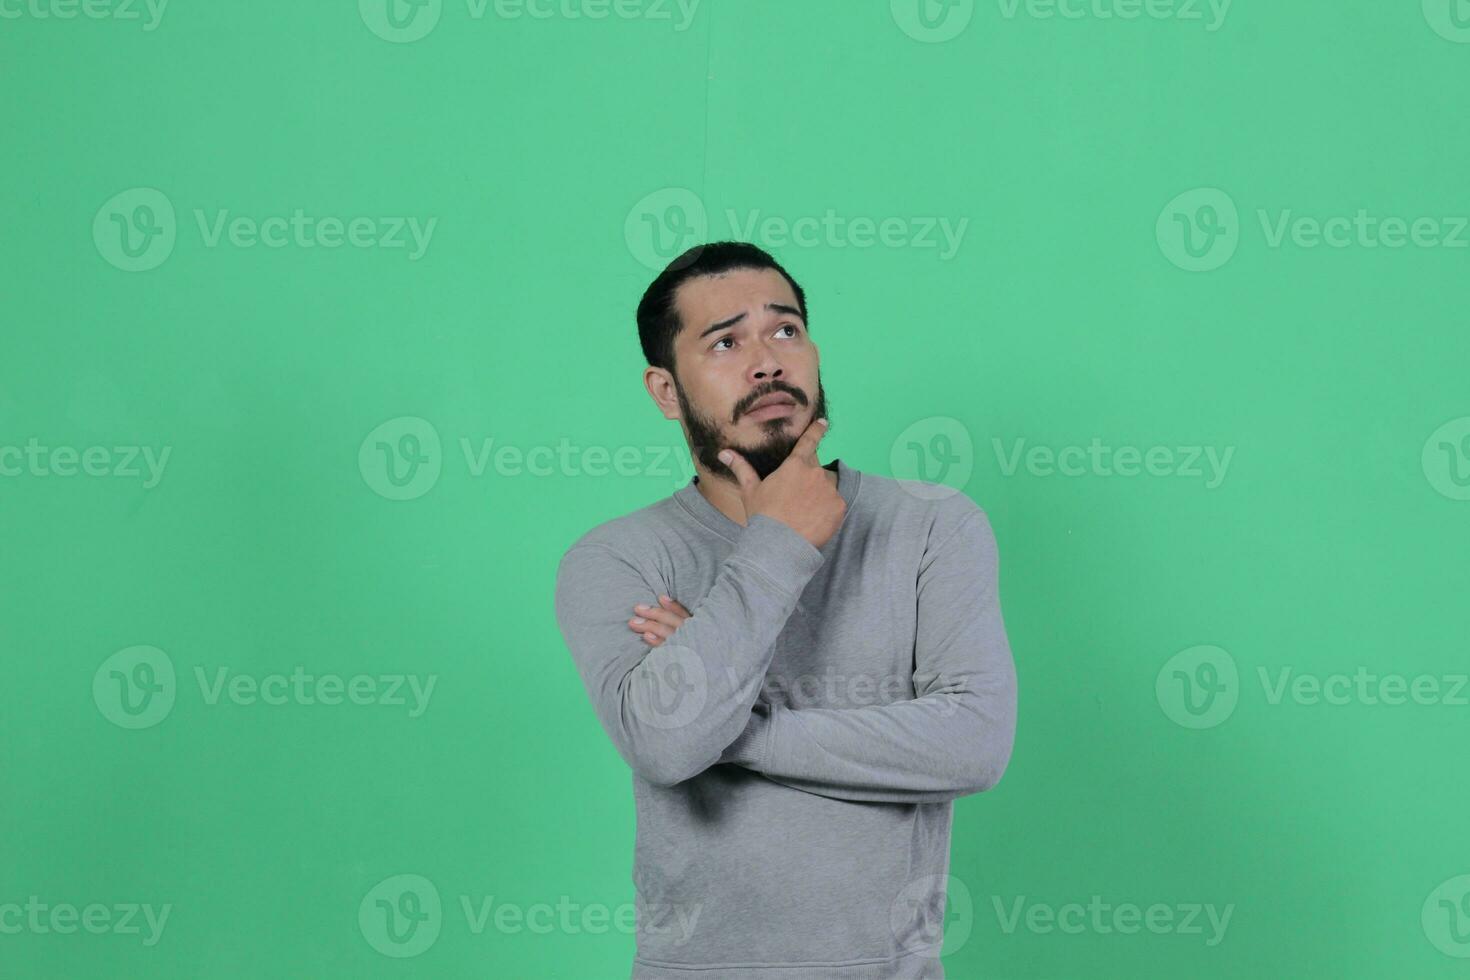 bärtig asiatisch Mann posiert tragen ein grau Hemd gegen ein Grün Hintergrund foto